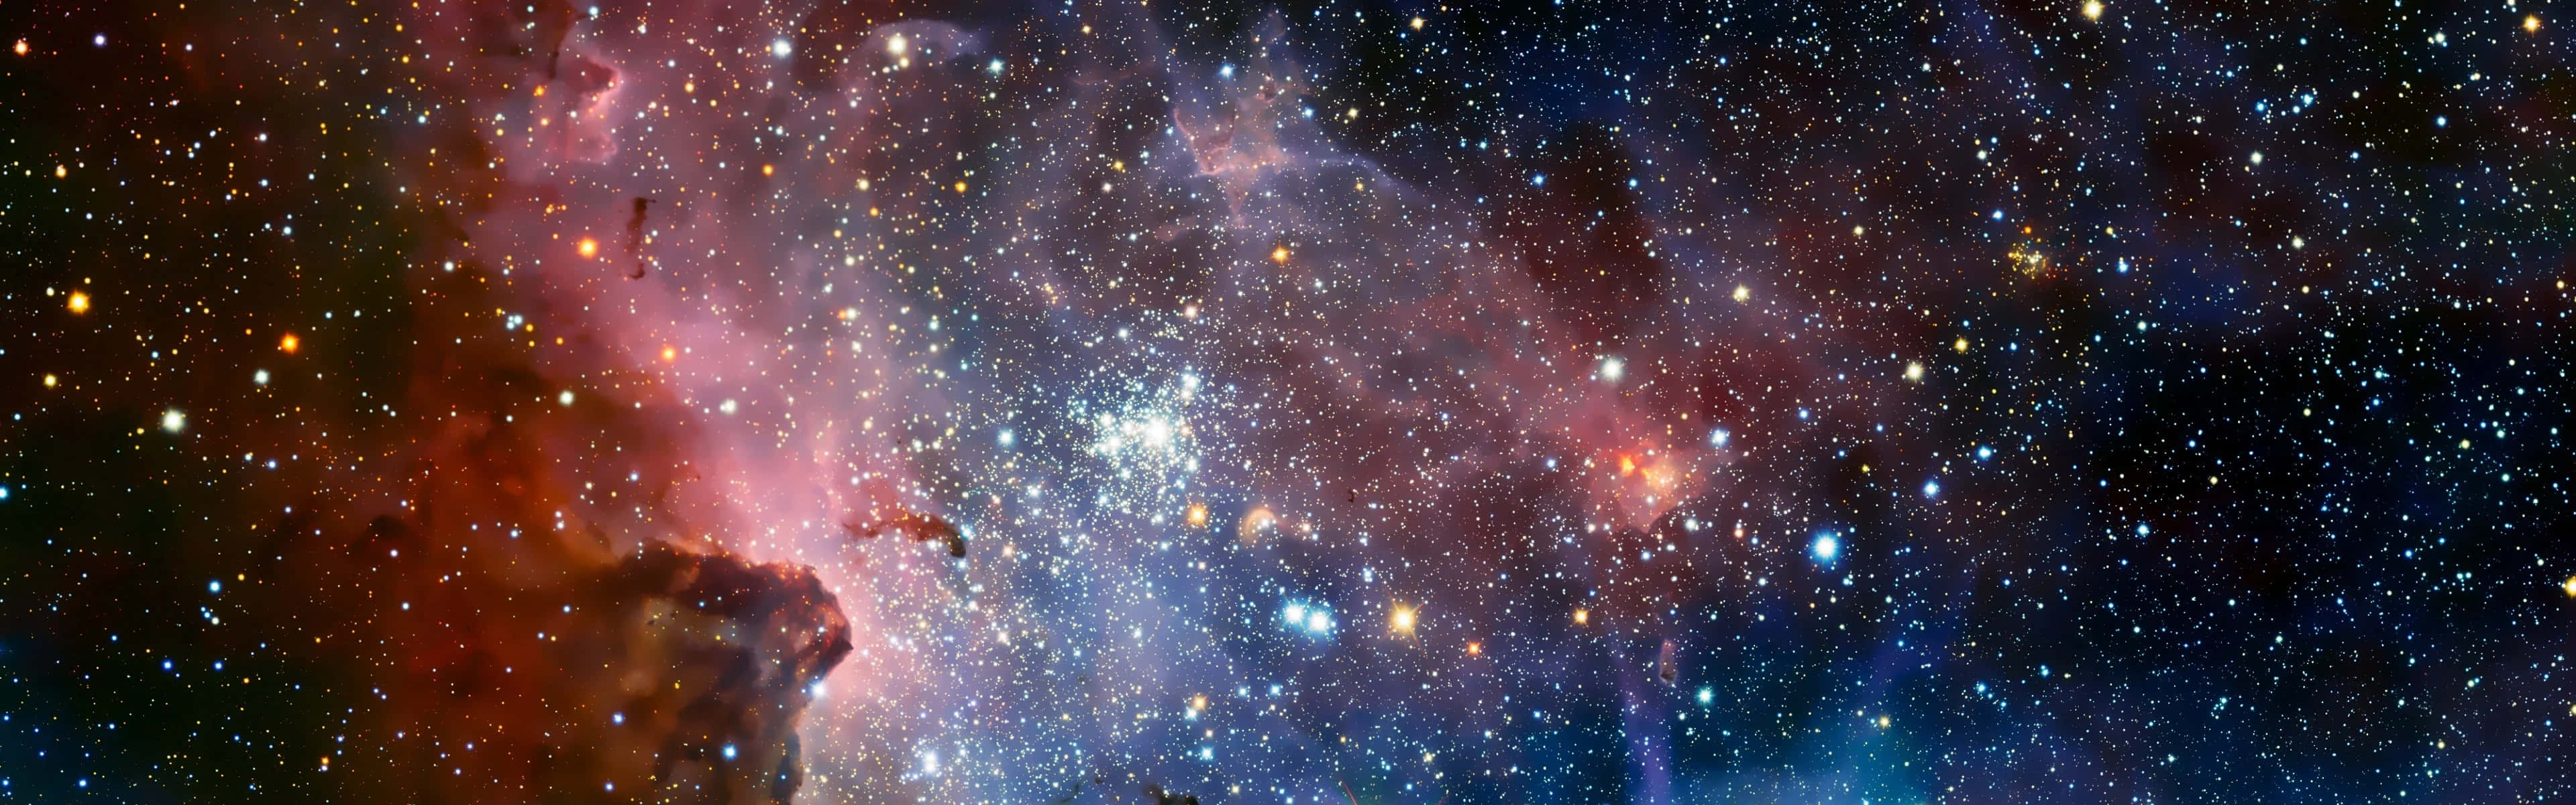 Envy Av Nebulosan Med Stjärnor Och Stjärnor Wallpaper